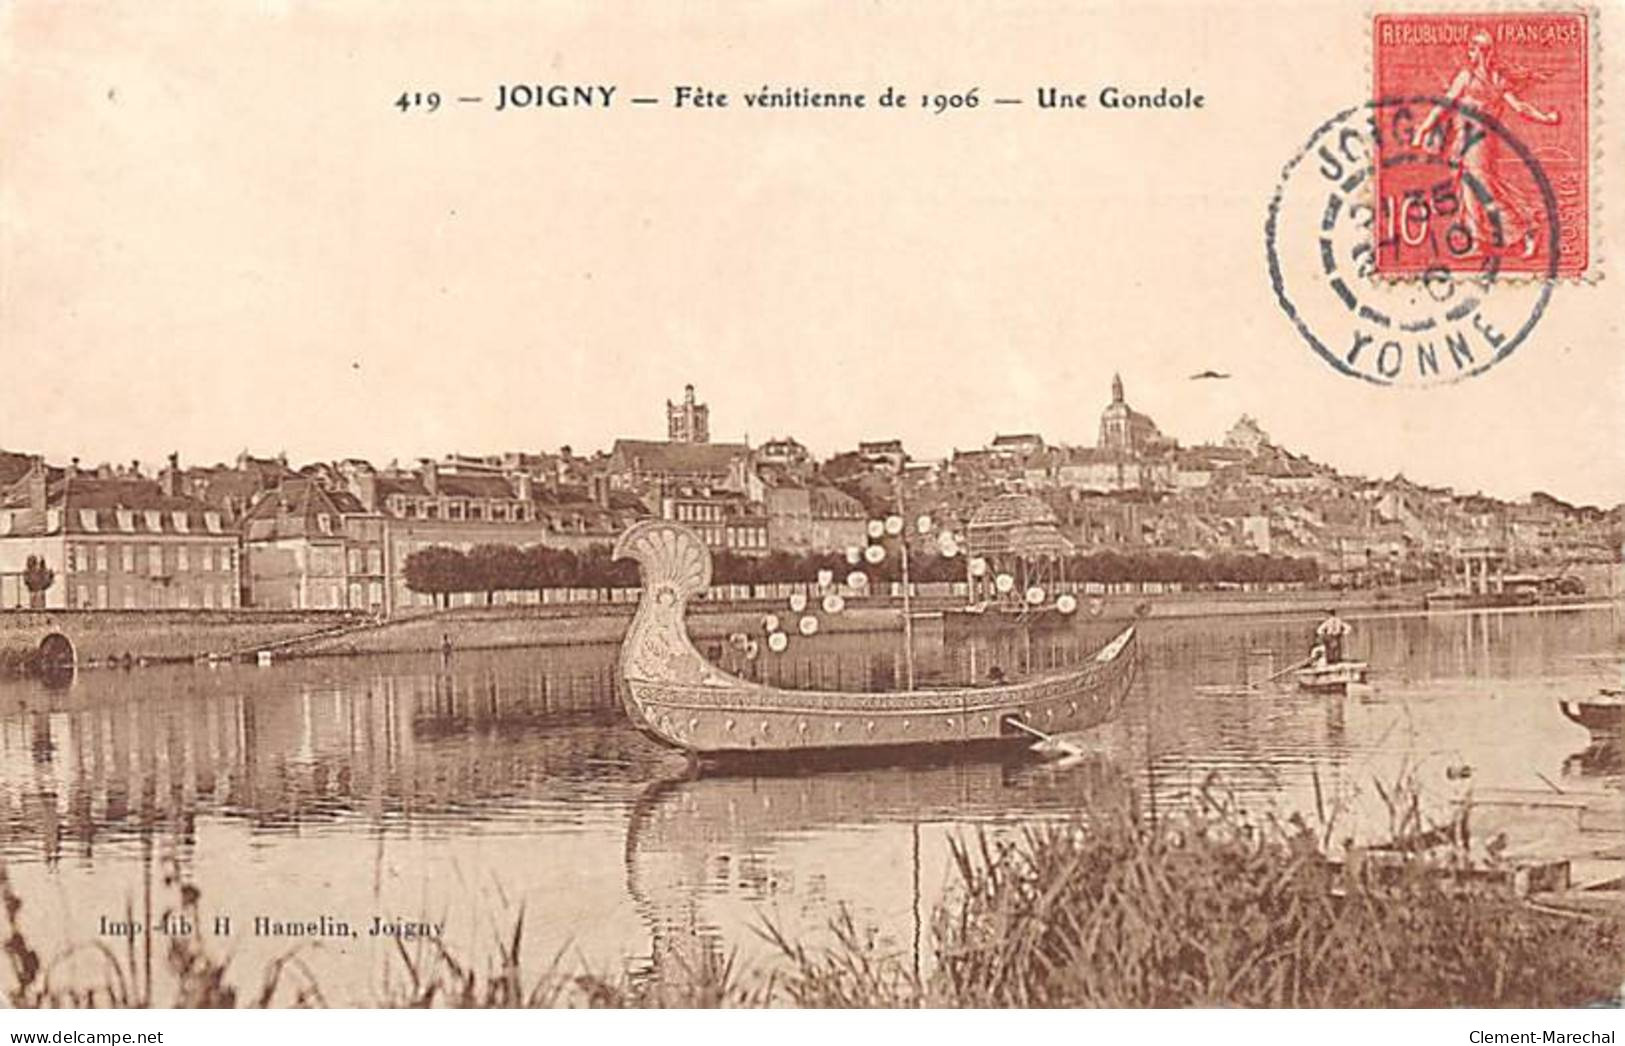 JOIGNY - Fête Vénitienne De 1906 - Une Gondole - état - Joigny